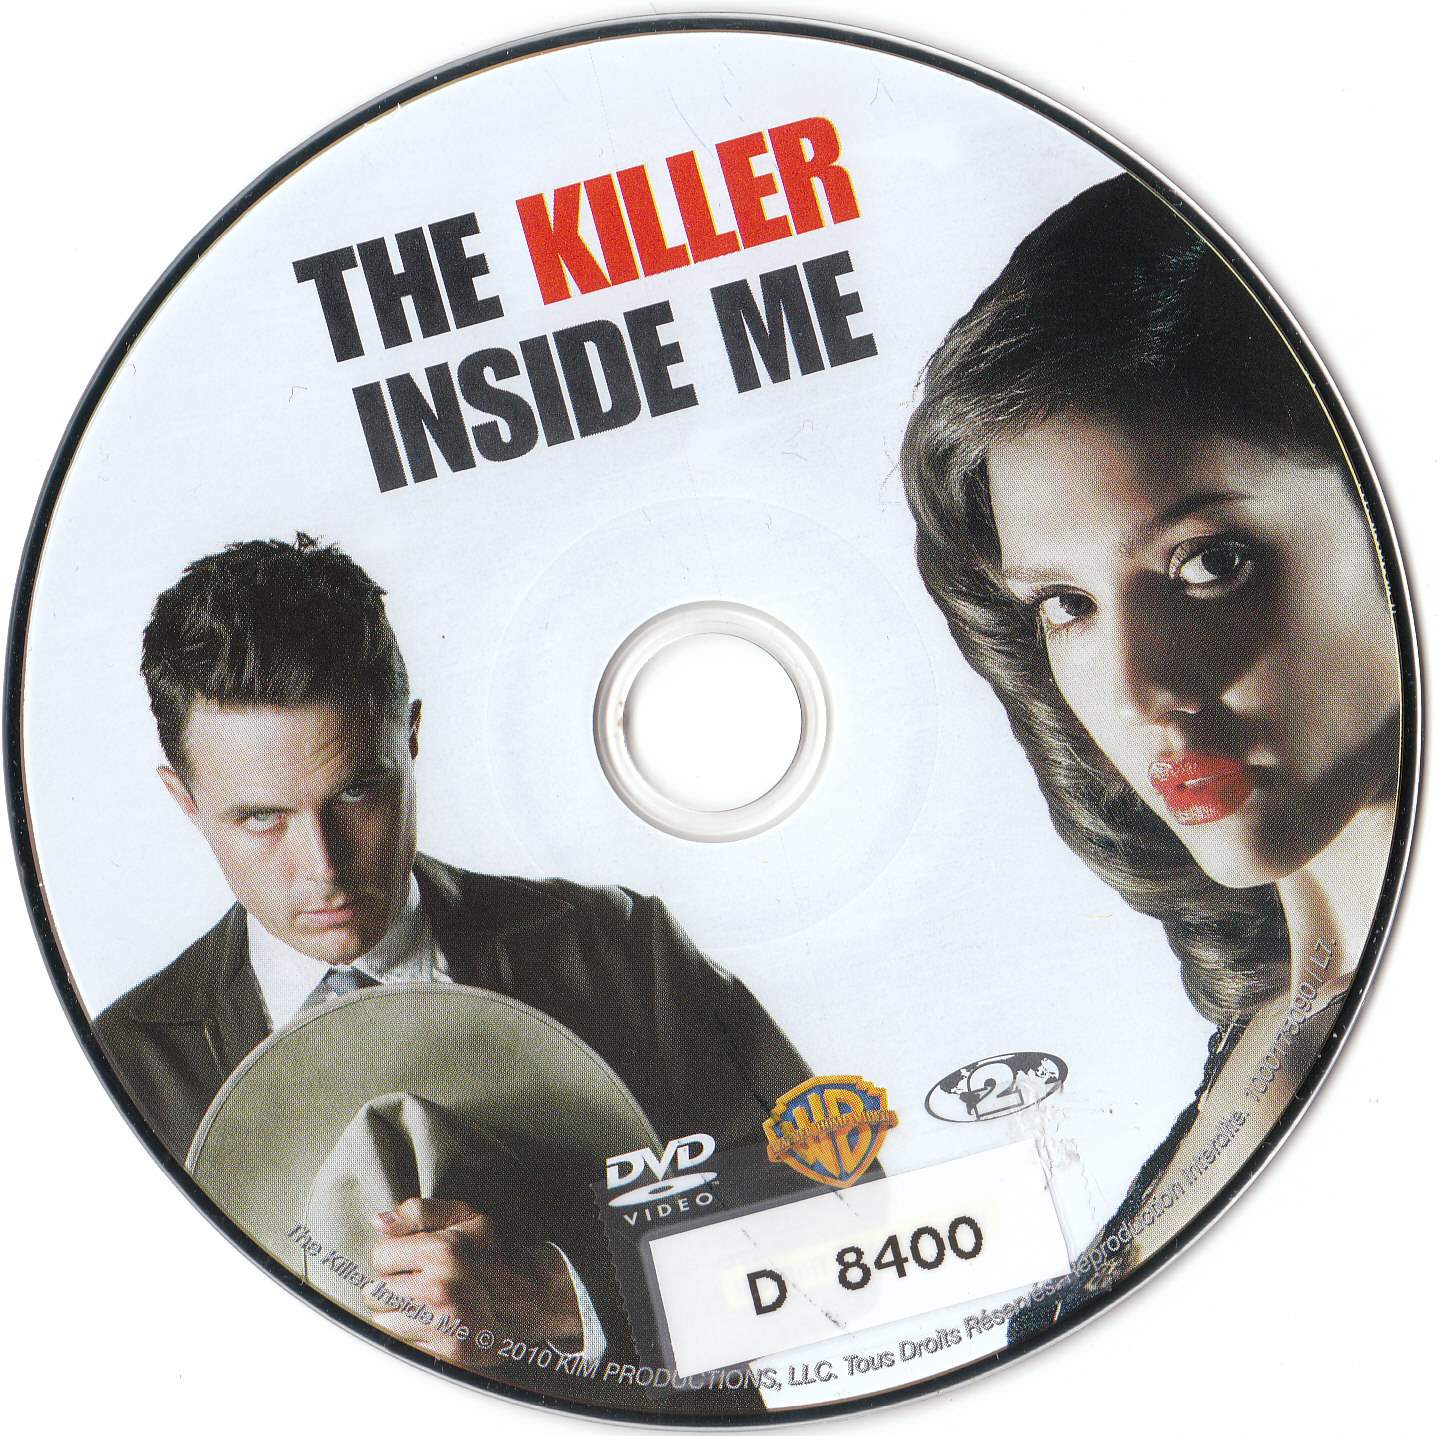 The killer inside me v2